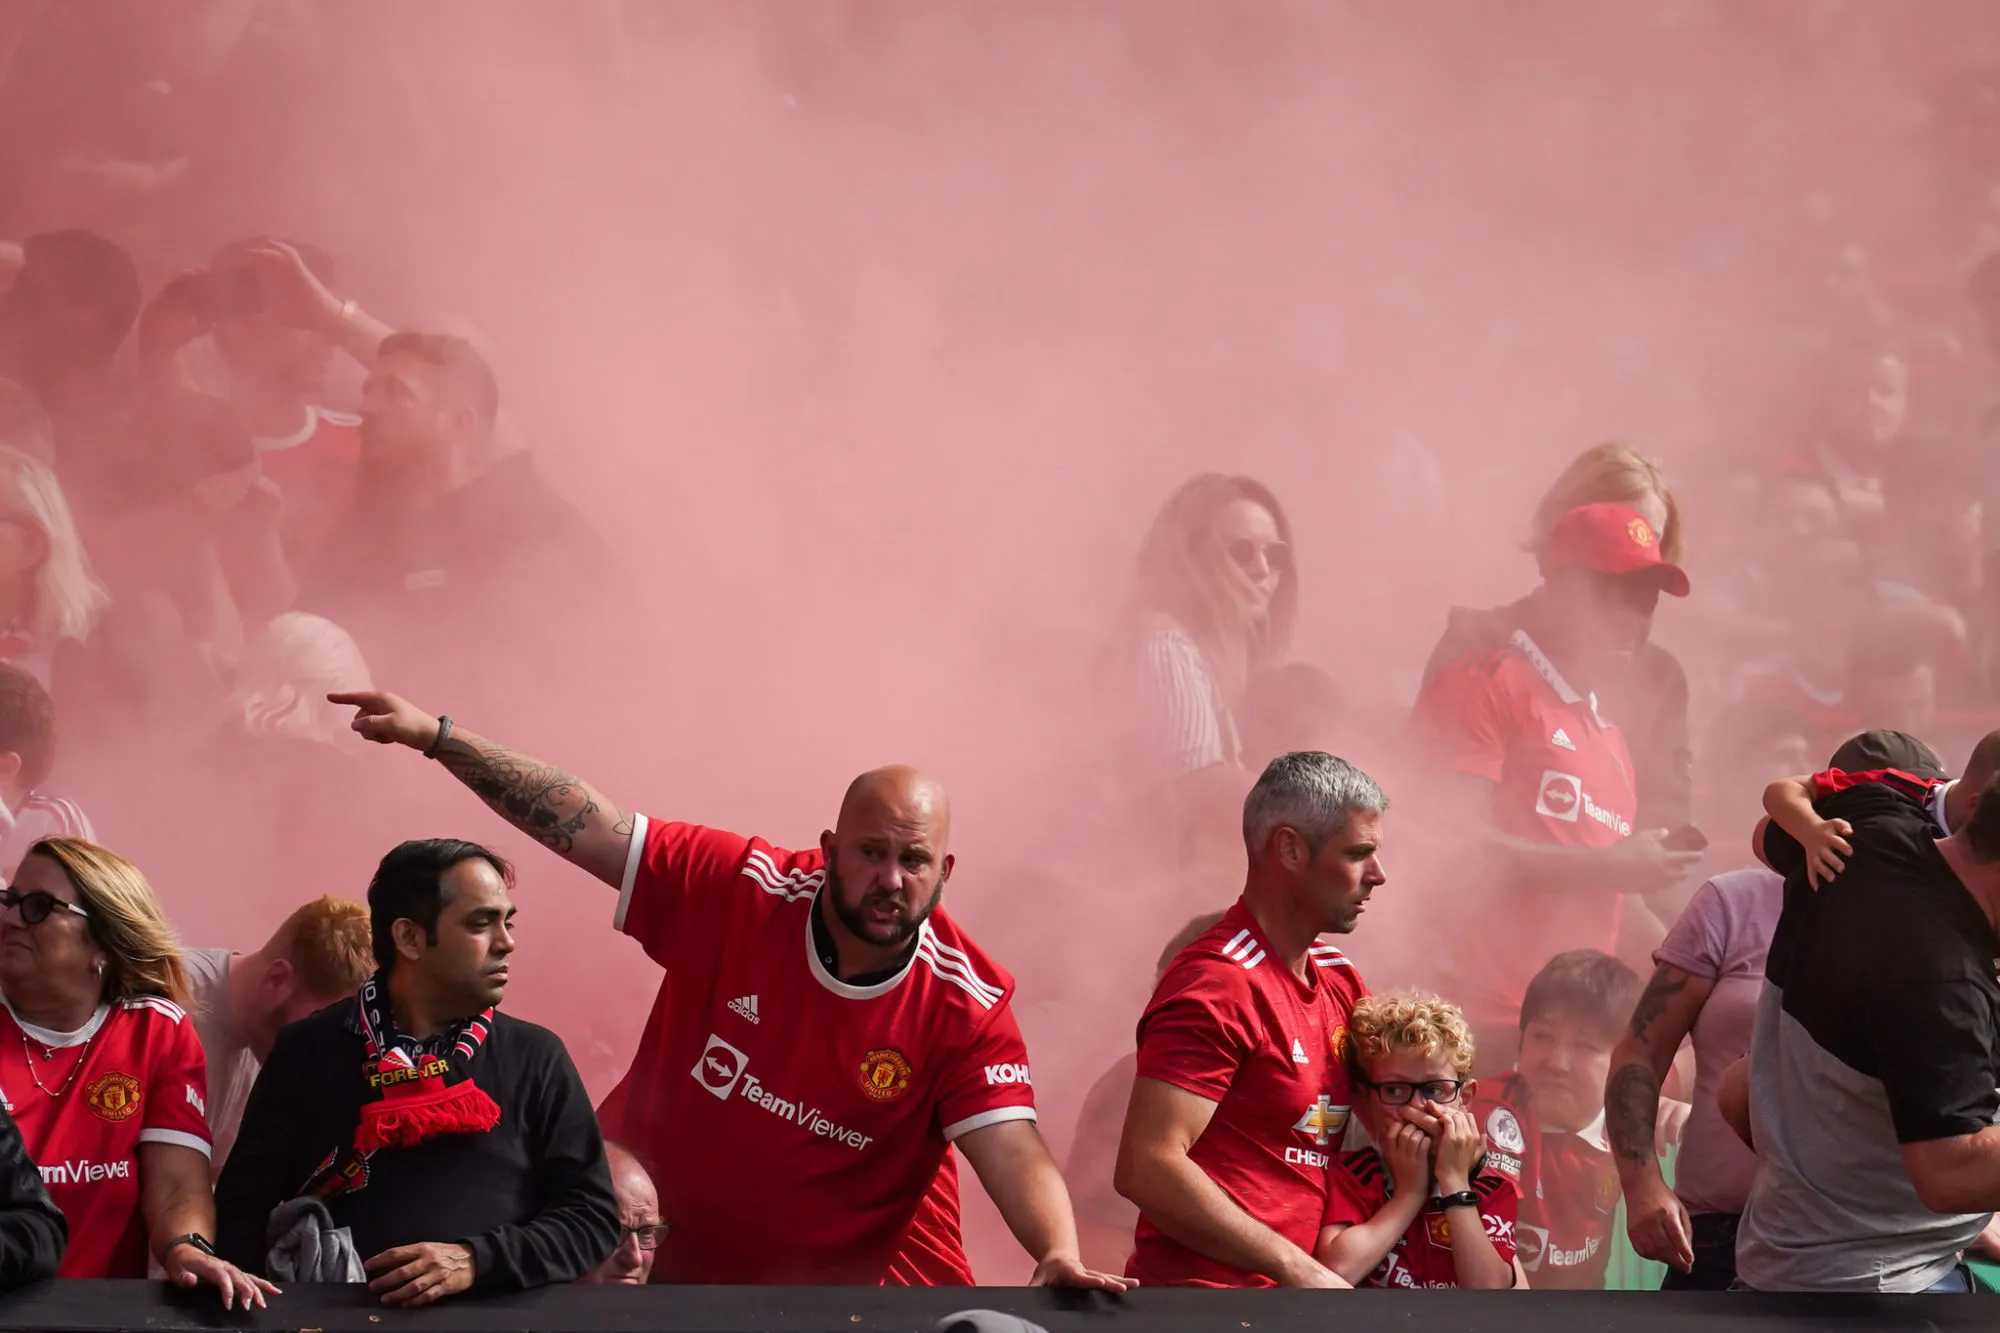 Les supporters de Manchester United vont protester contre les Glazer en marge du choc face à Liverpool